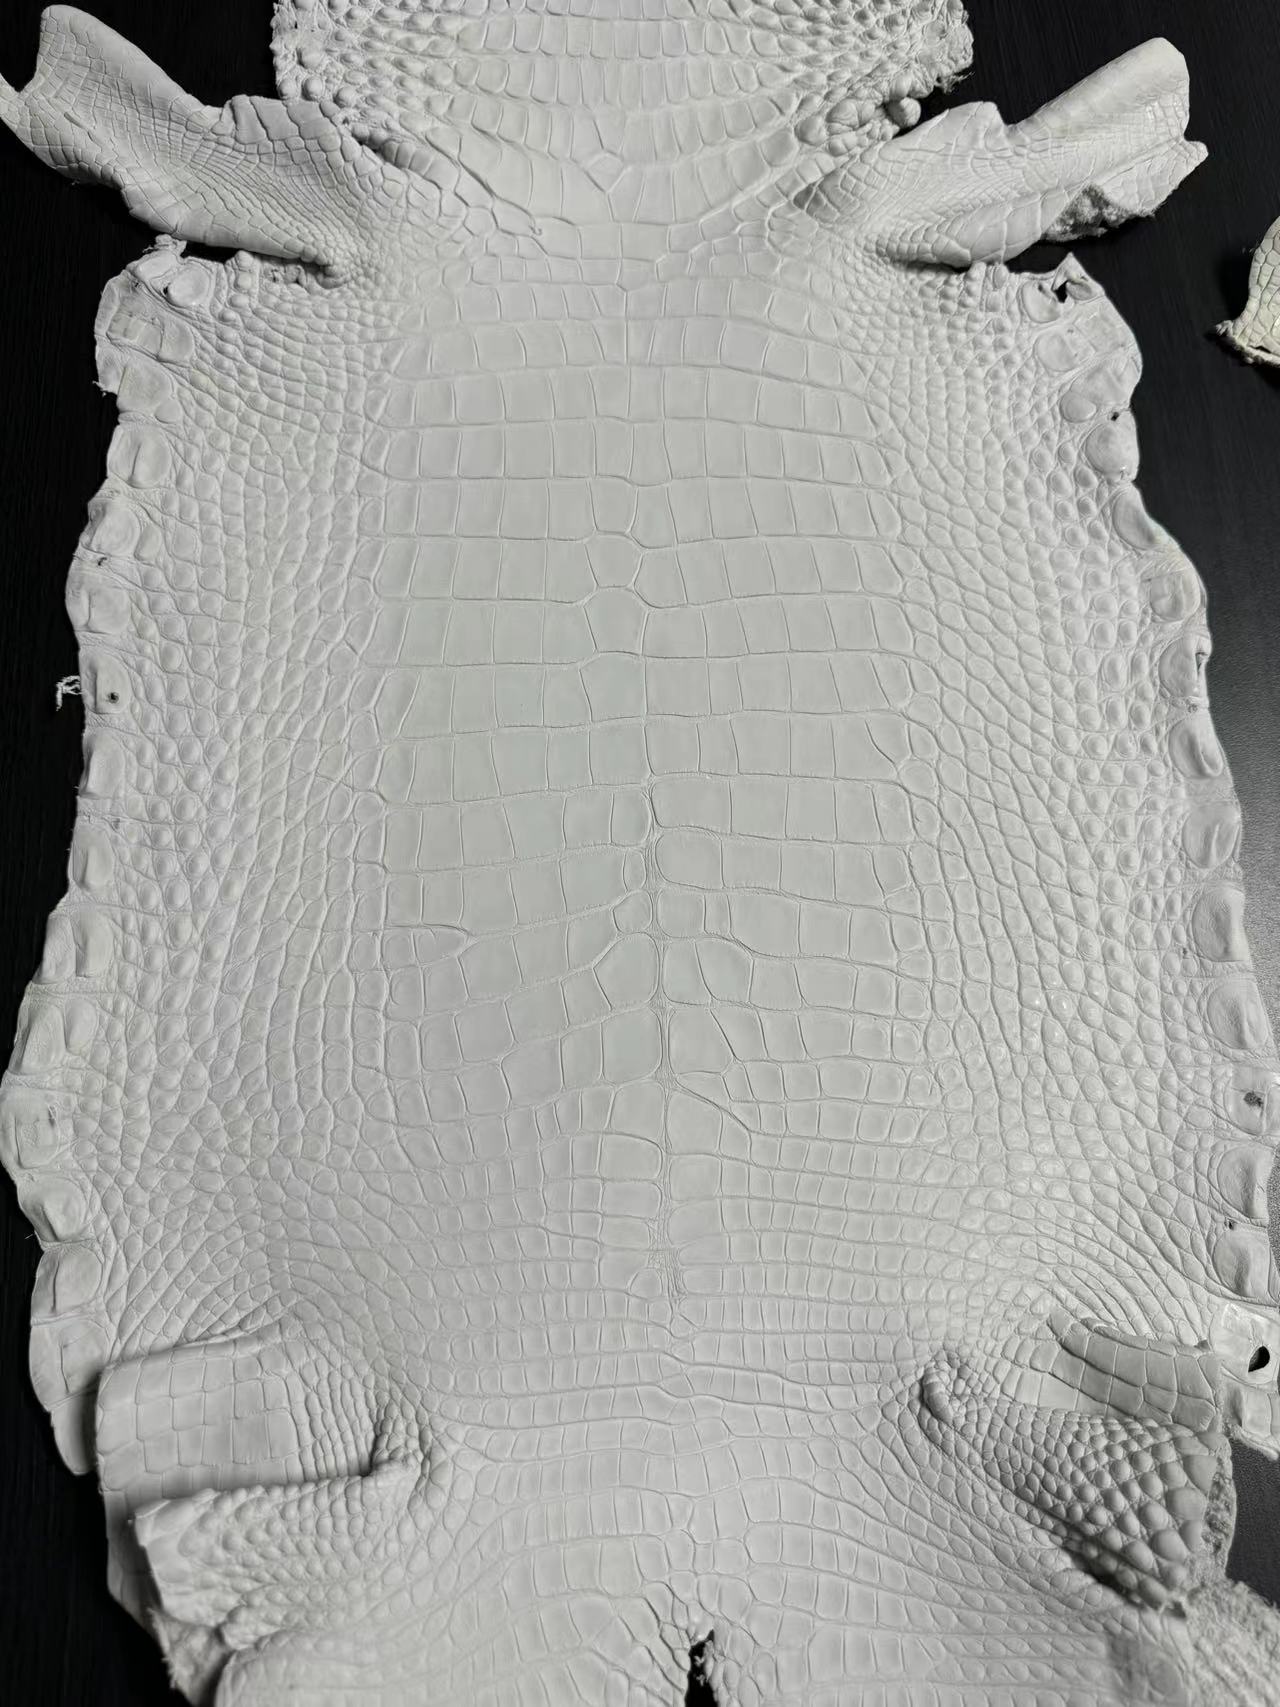 Alligator Crust Skin